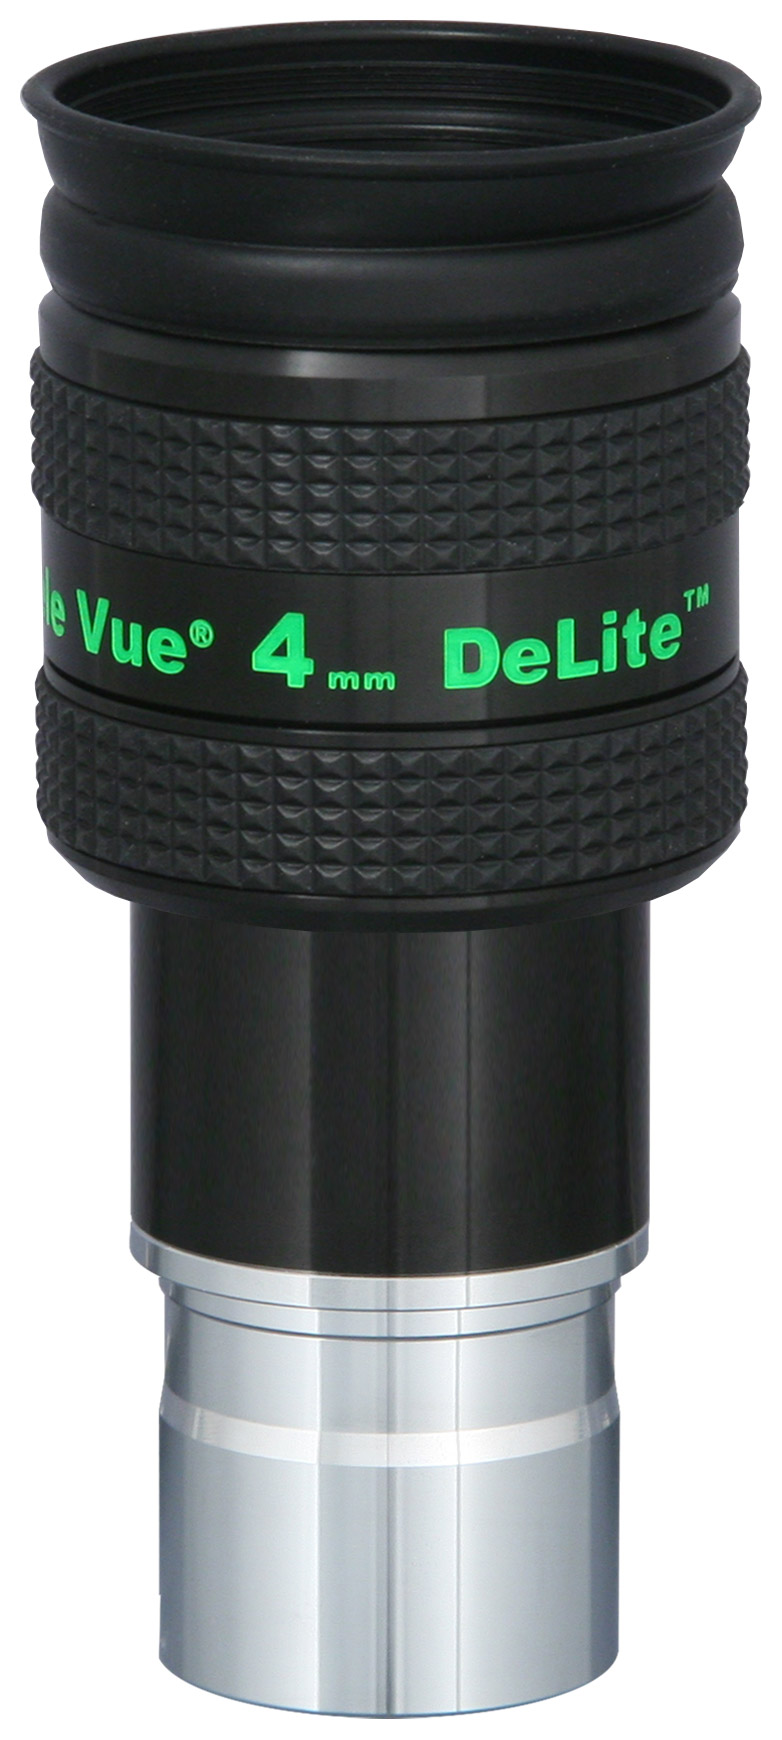 DeLite 4mm Eyepiece